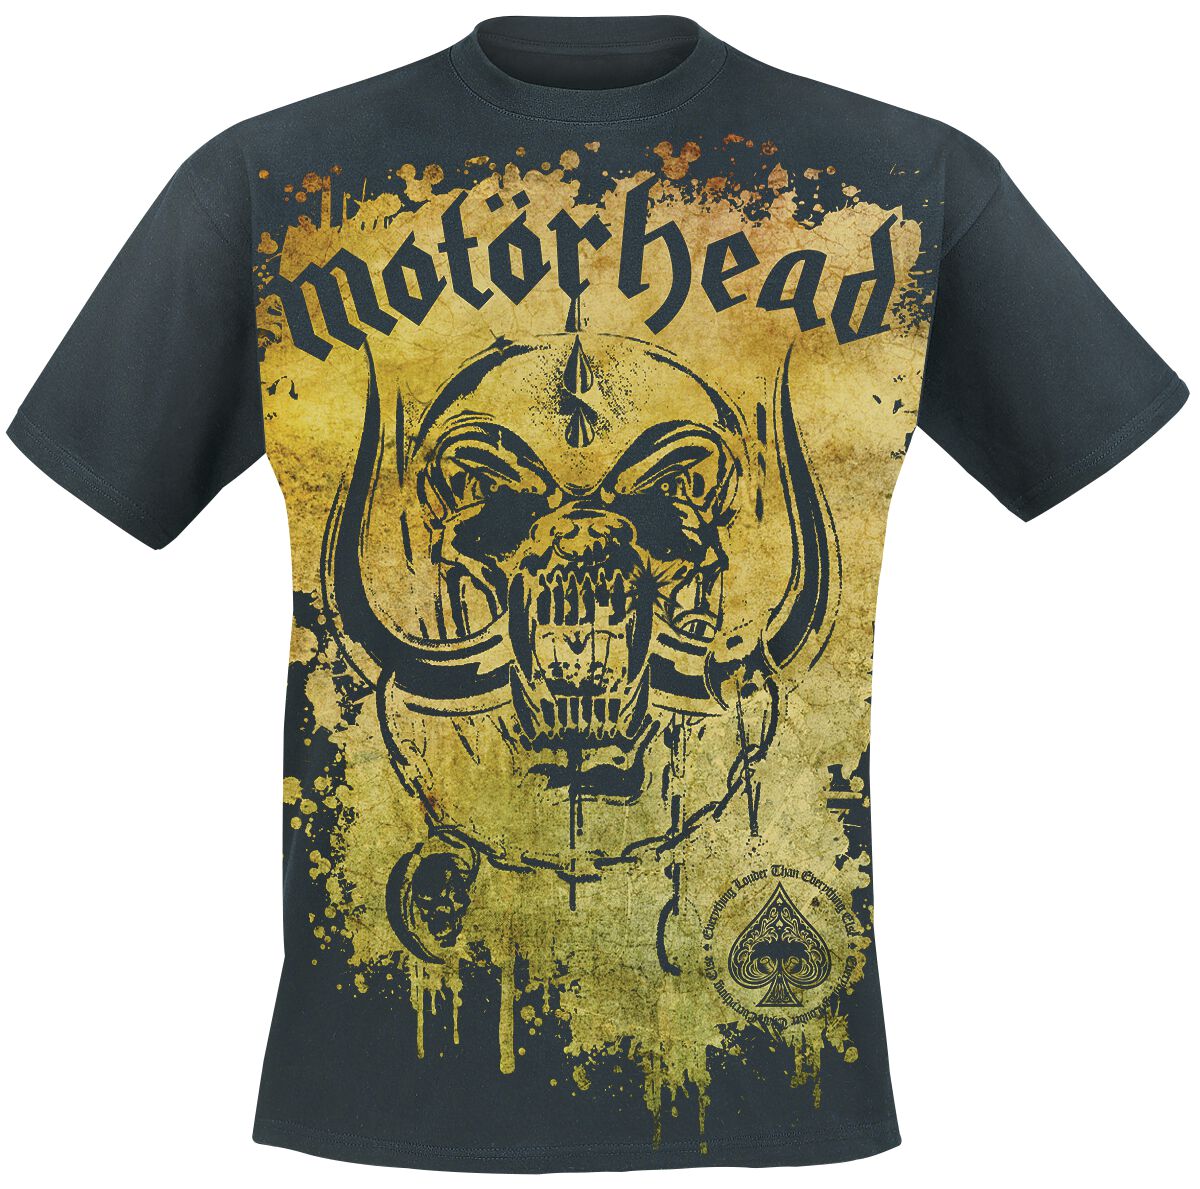 Motörhead T-Shirt - Acid Splatter - M bis 3XL - für Männer - Größe M - schwarz  - Lizenziertes Merchandise!